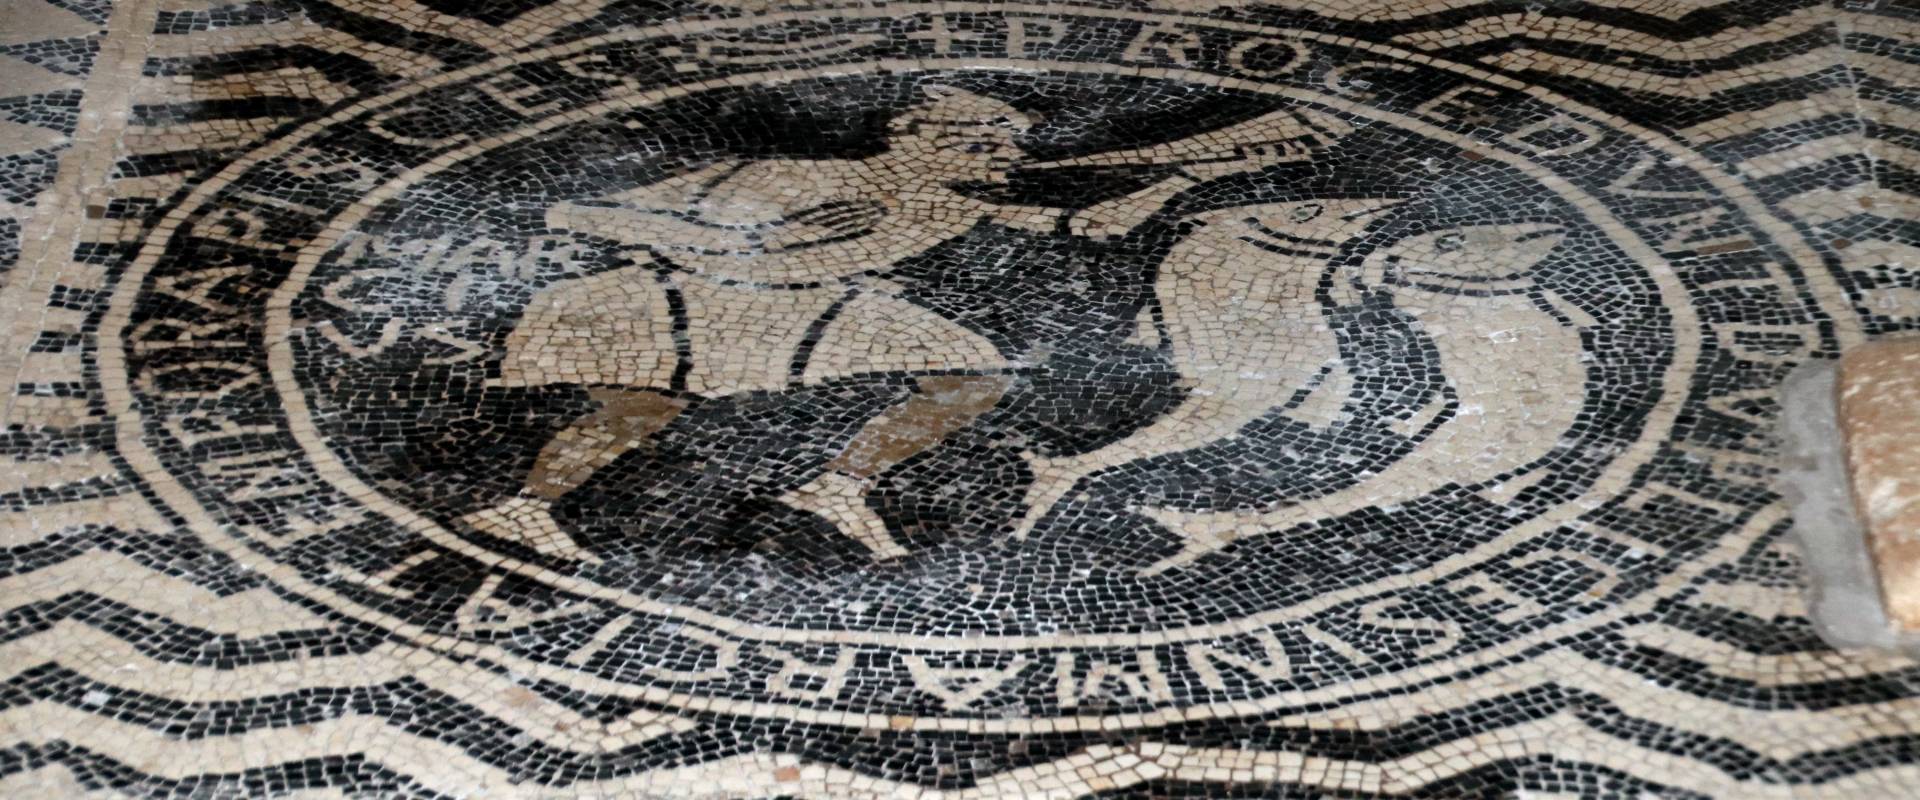 Basilica di San Savino (Piacenza), mosaico con segni zodiacali entro medaglioni, prima metà del secolo xii 15 photo by Mongolo1984